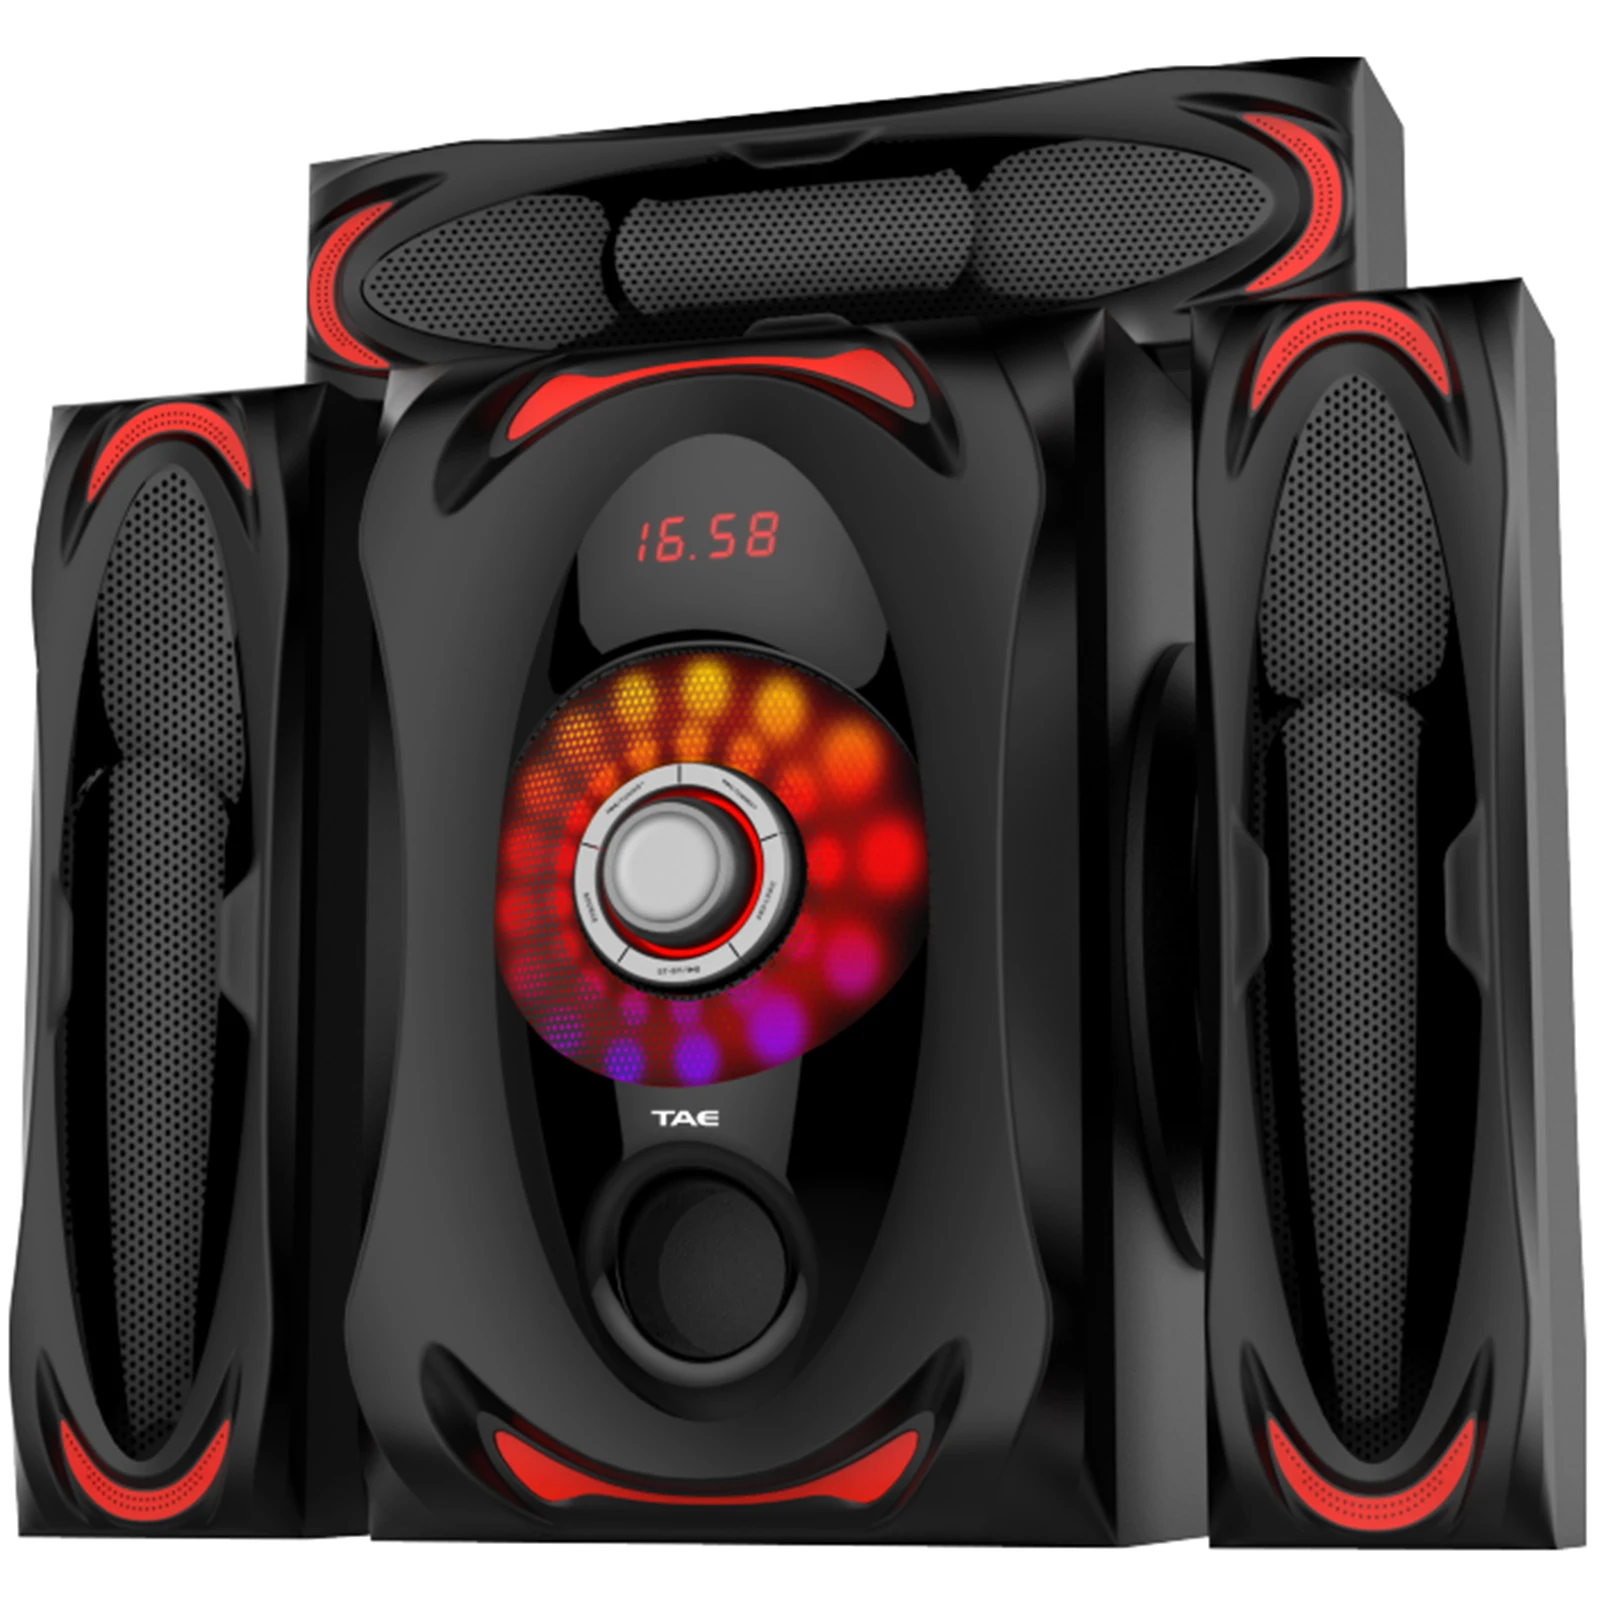 TK-903-3.1 multimedia speaker home theater speaker with USB/BT/SD